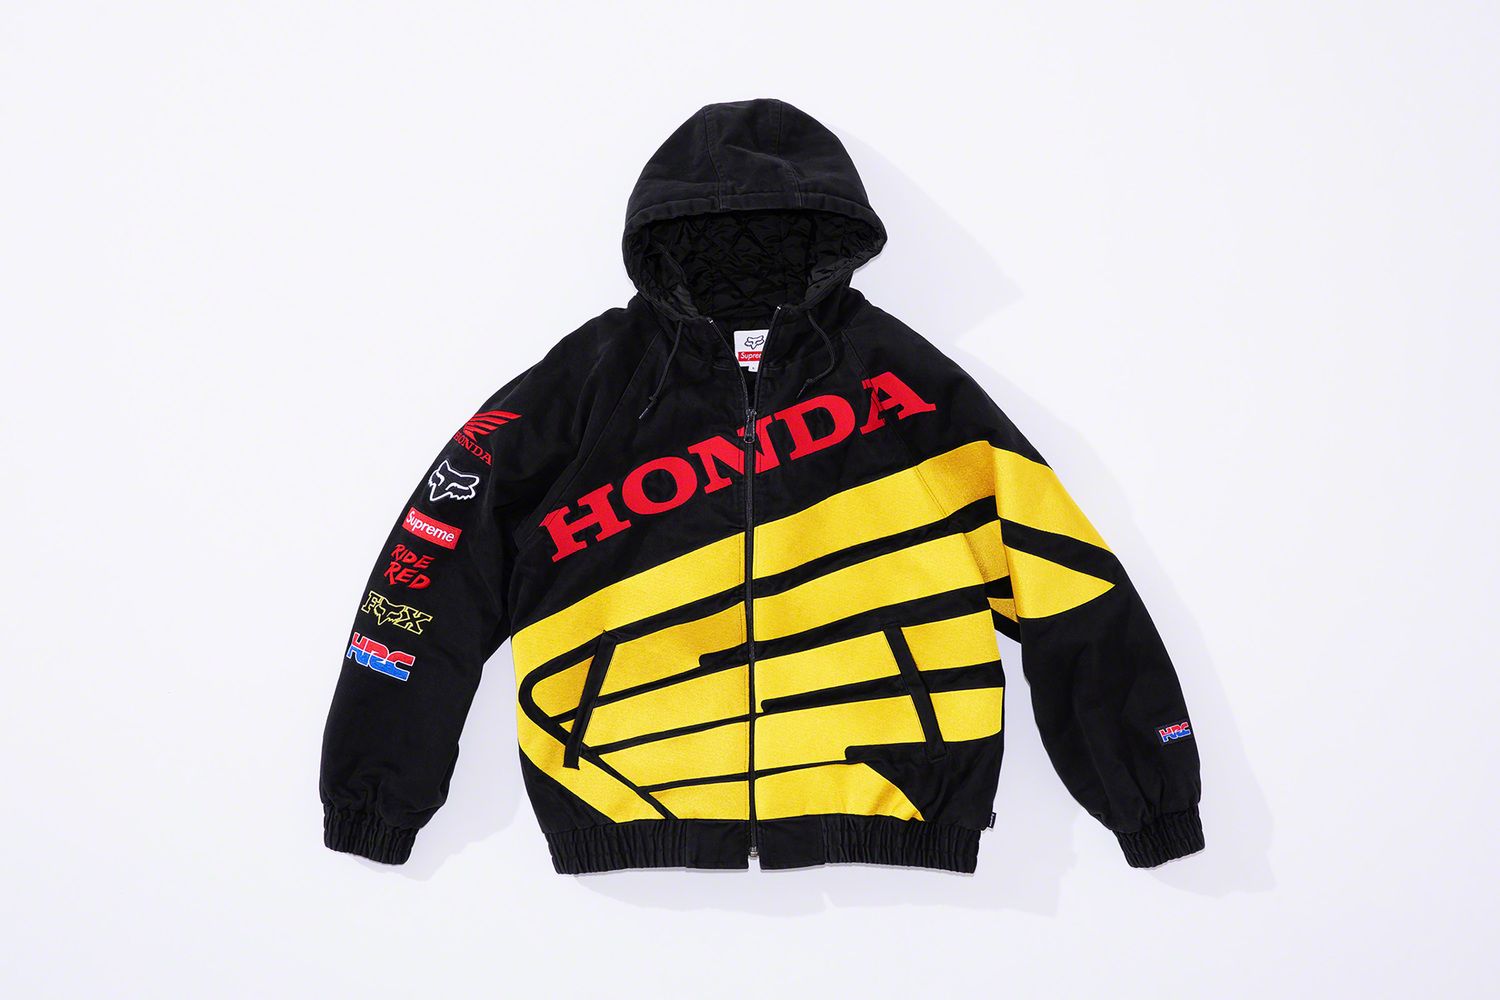 Supreme®/Honda®/Fox® Racing – Supreme